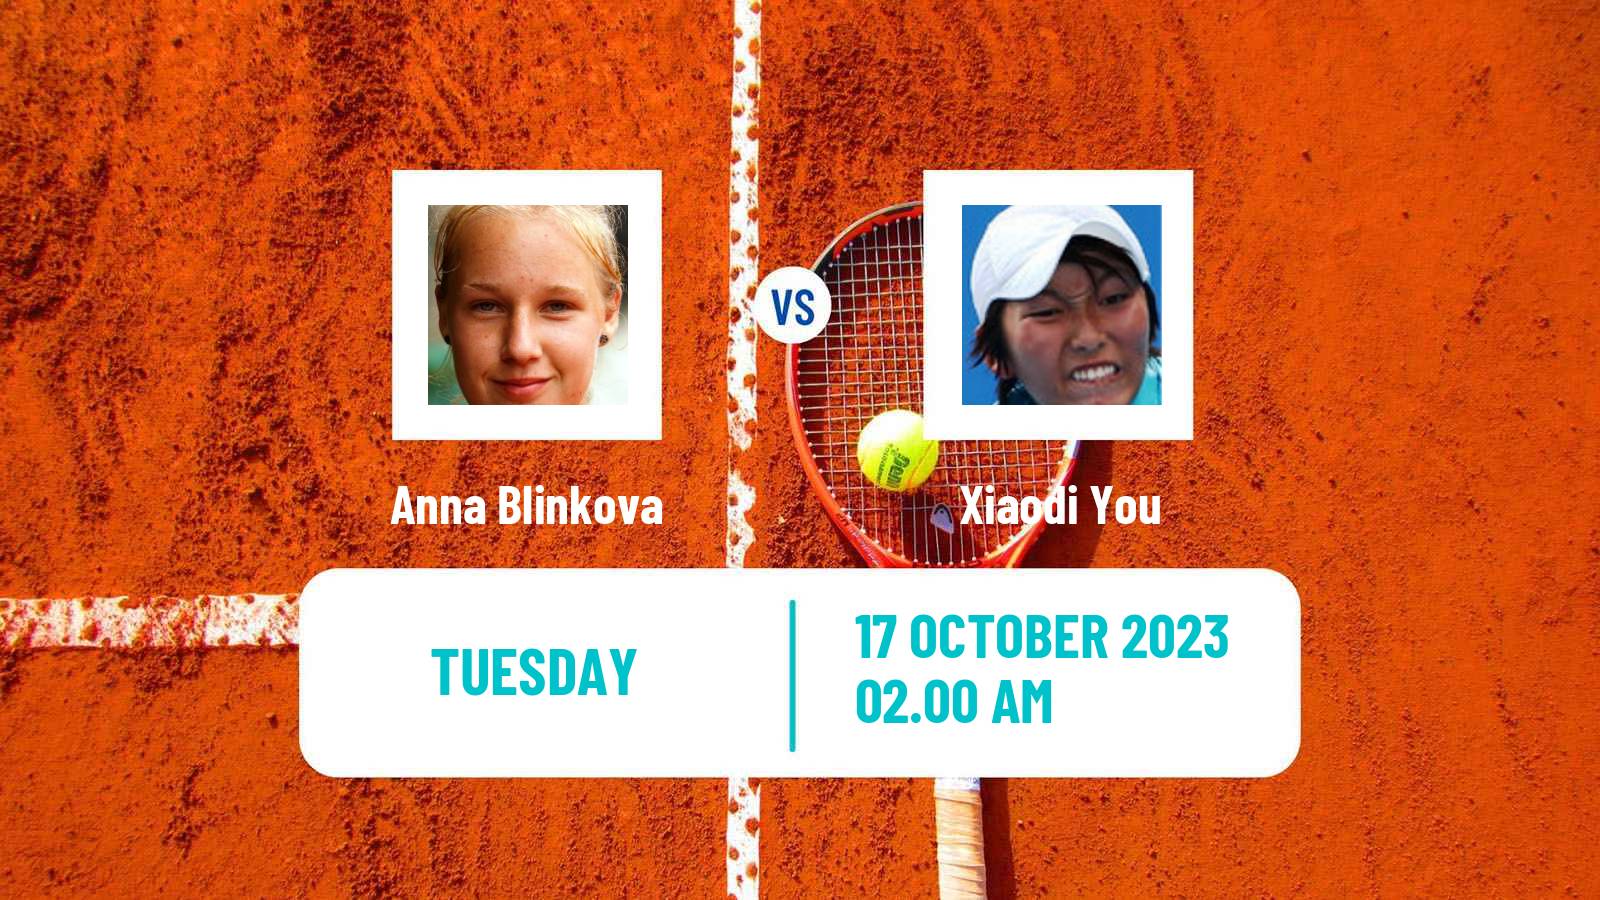 Tennis WTA Nanchang Anna Blinkova - Xiaodi You